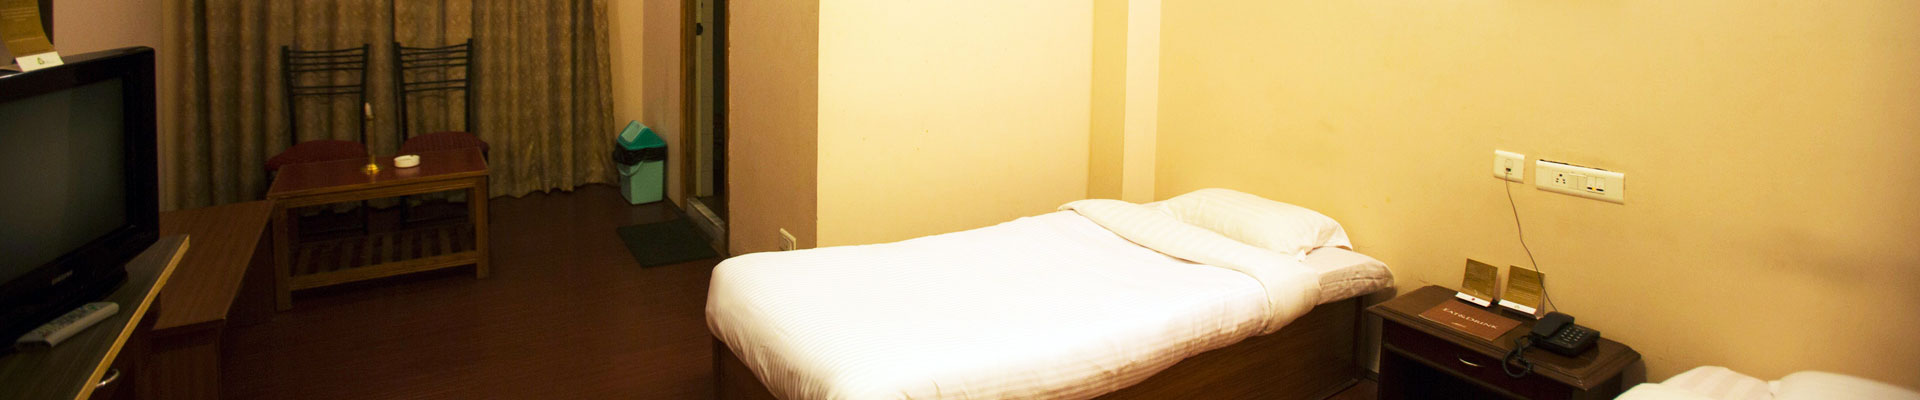 Hotel Rendezvous Standard Rooms